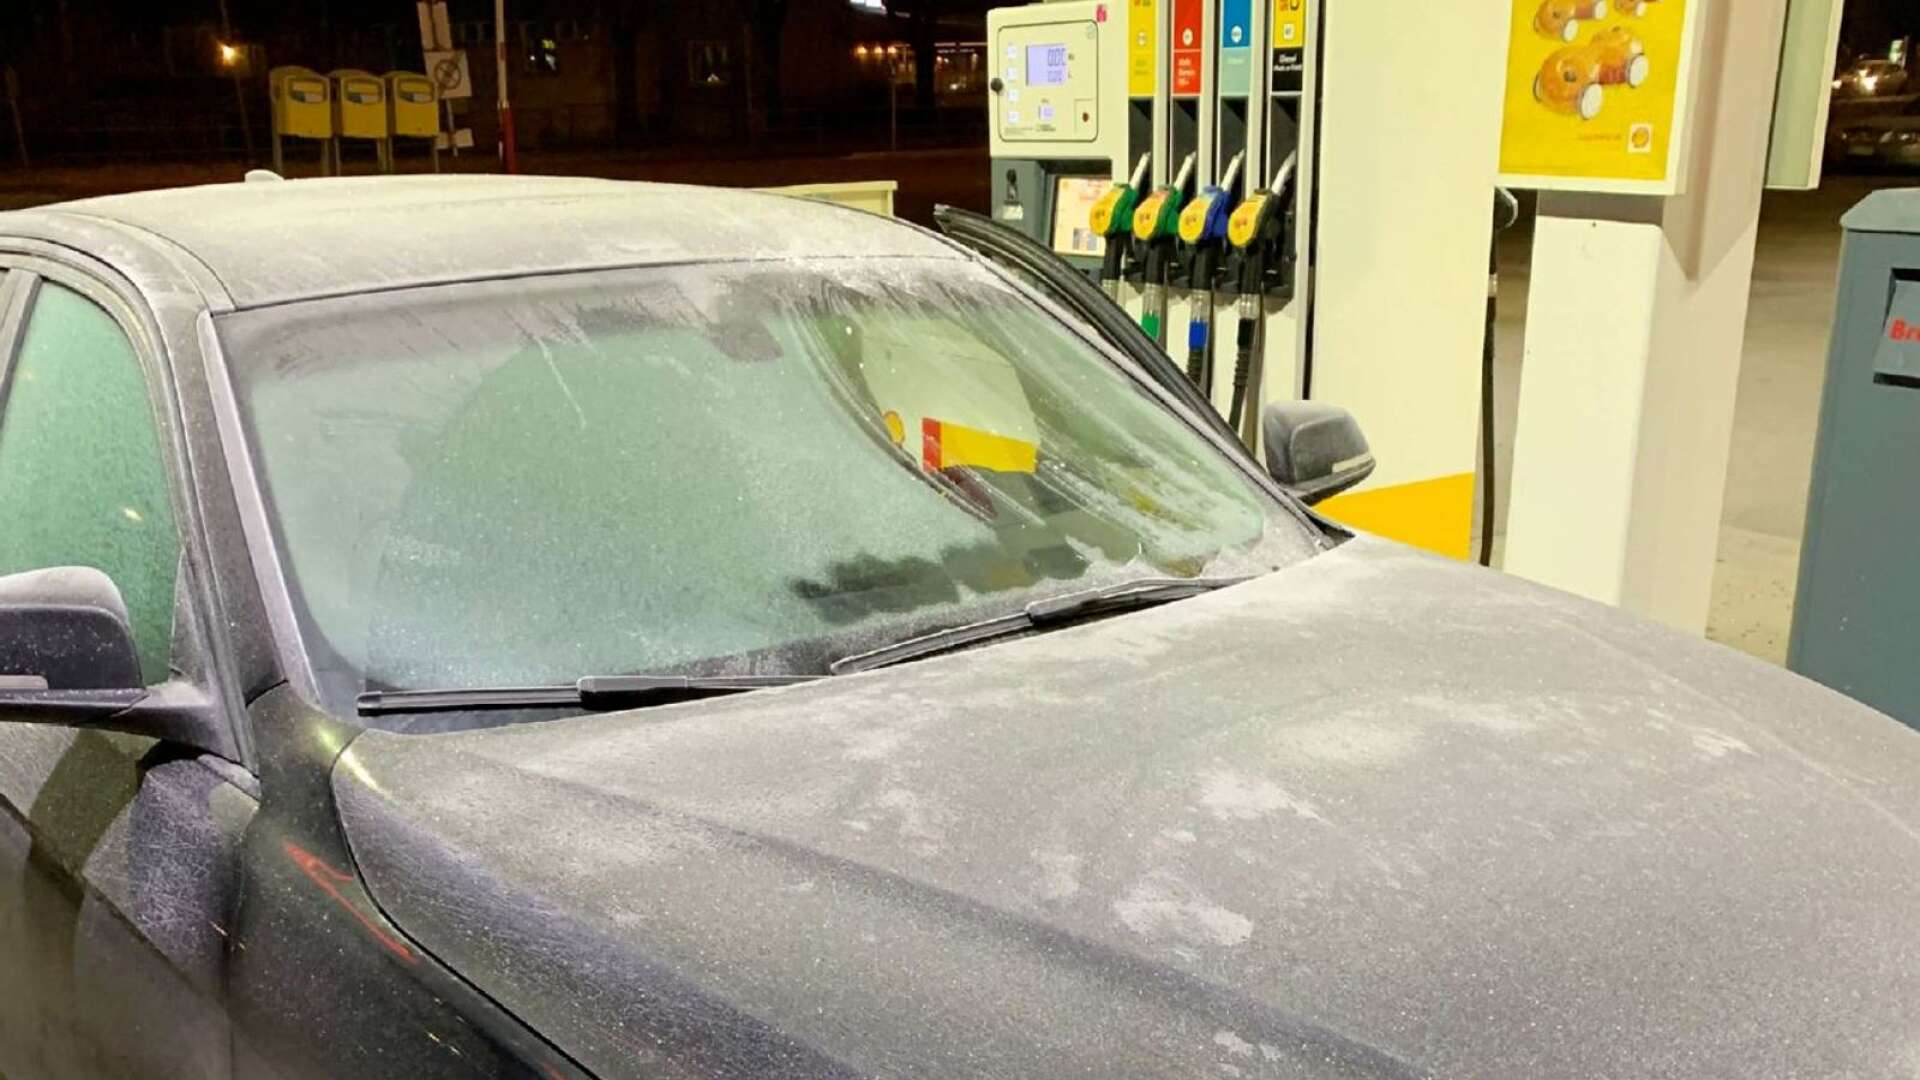 Mannens bilruta var delvis täckt av is när han stoppades av polisen.